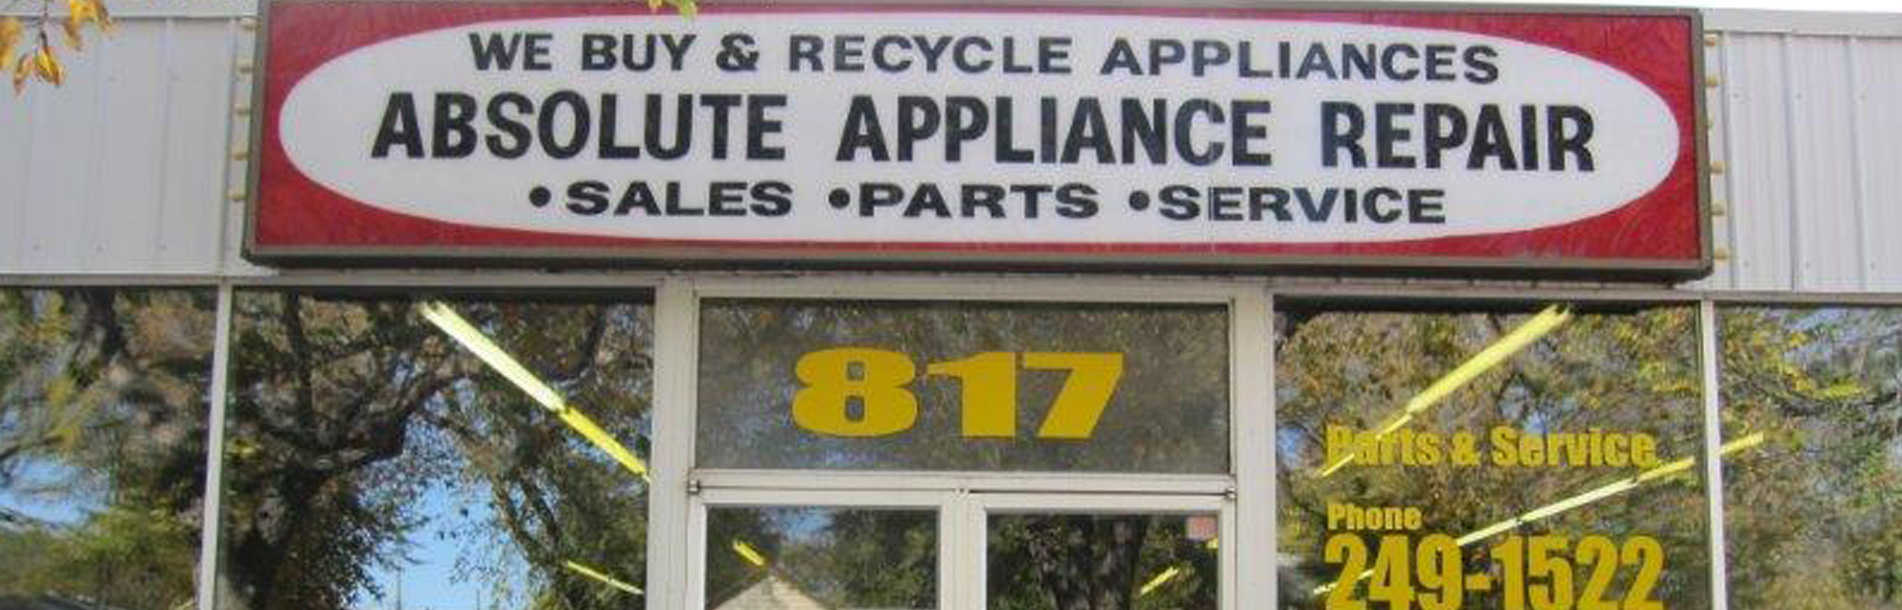 Absolute Appliance Repair